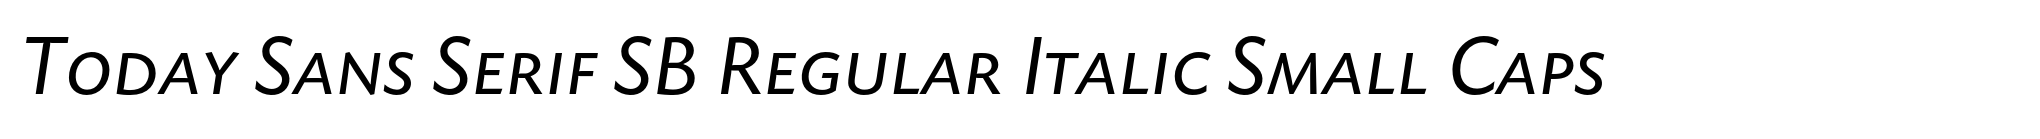 Today Sans Serif SB Regular Italic Small Caps image